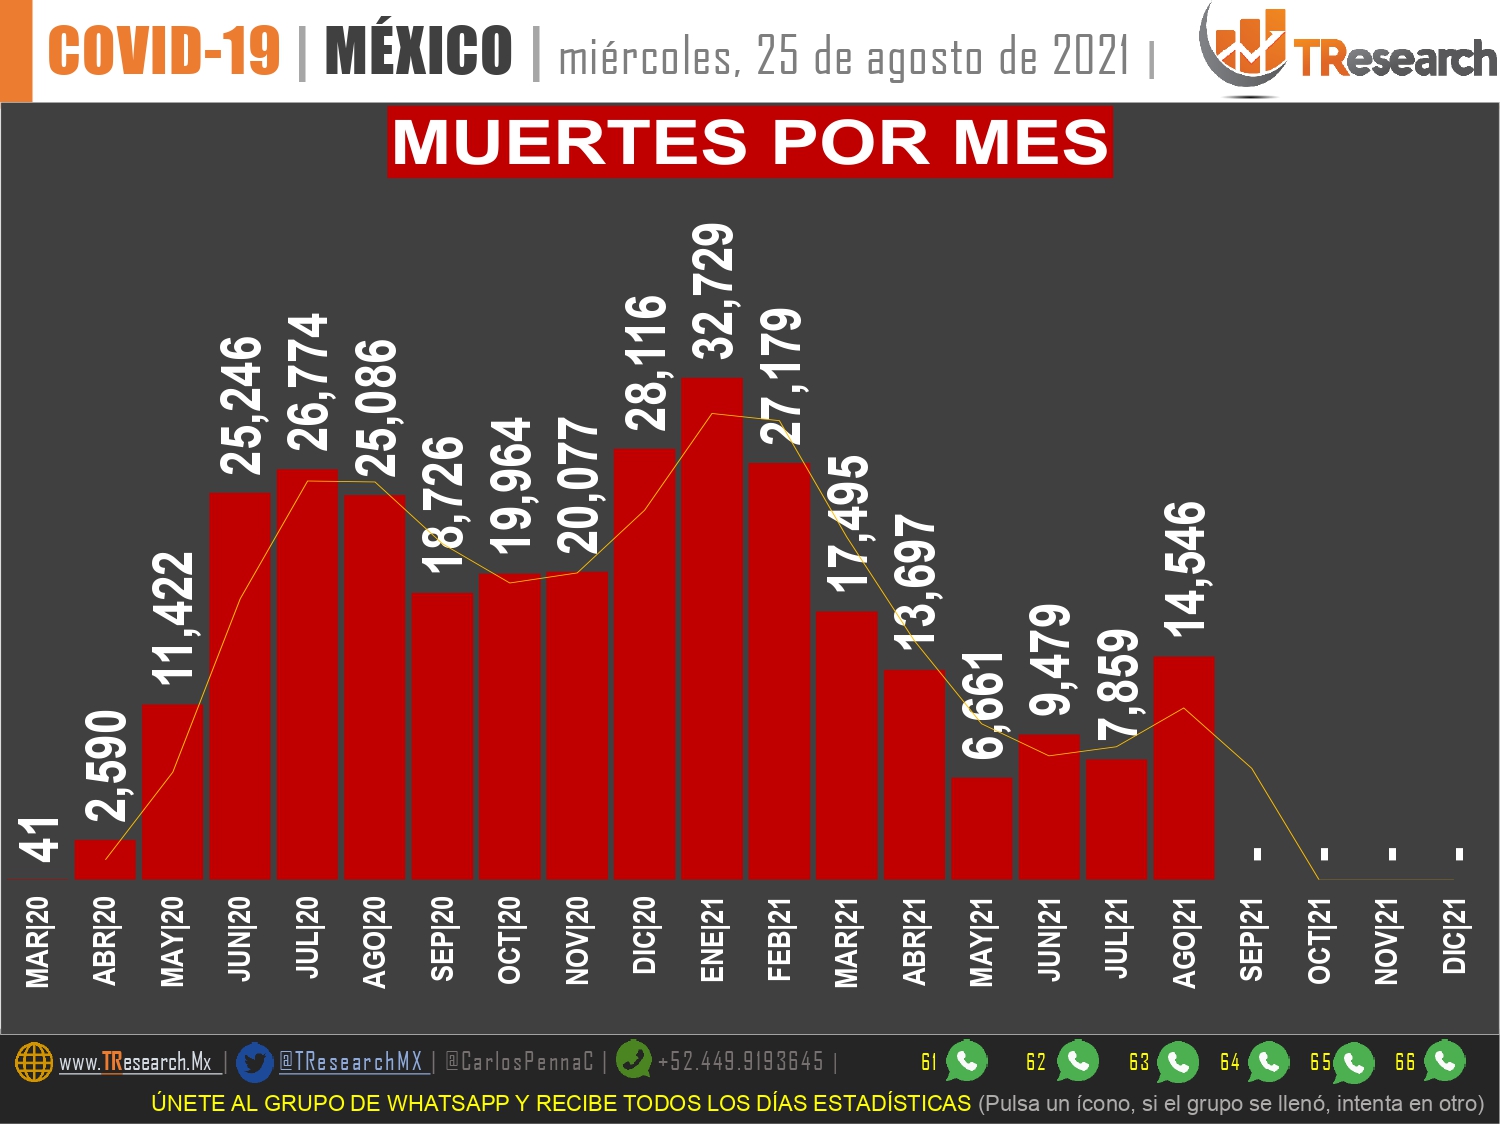 Con 986 muertos, ayer México fue el 3er país del mundo con más defunciones por Covid19 y registró su peor día en esta tercera ola